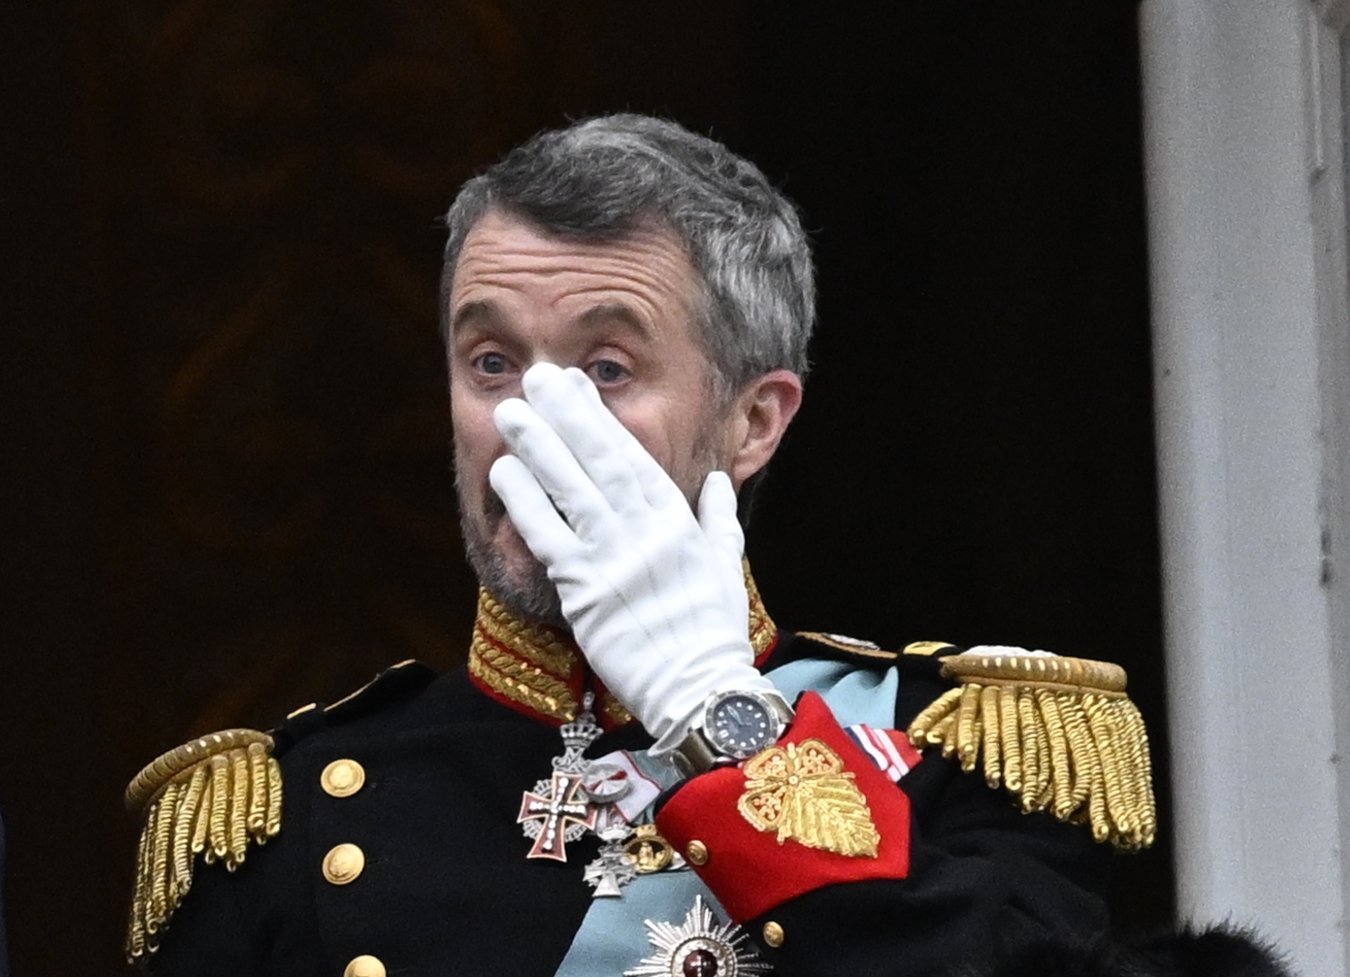 Escàndol espantós a la Casa Reial danesa, més problemes per a Frederic X